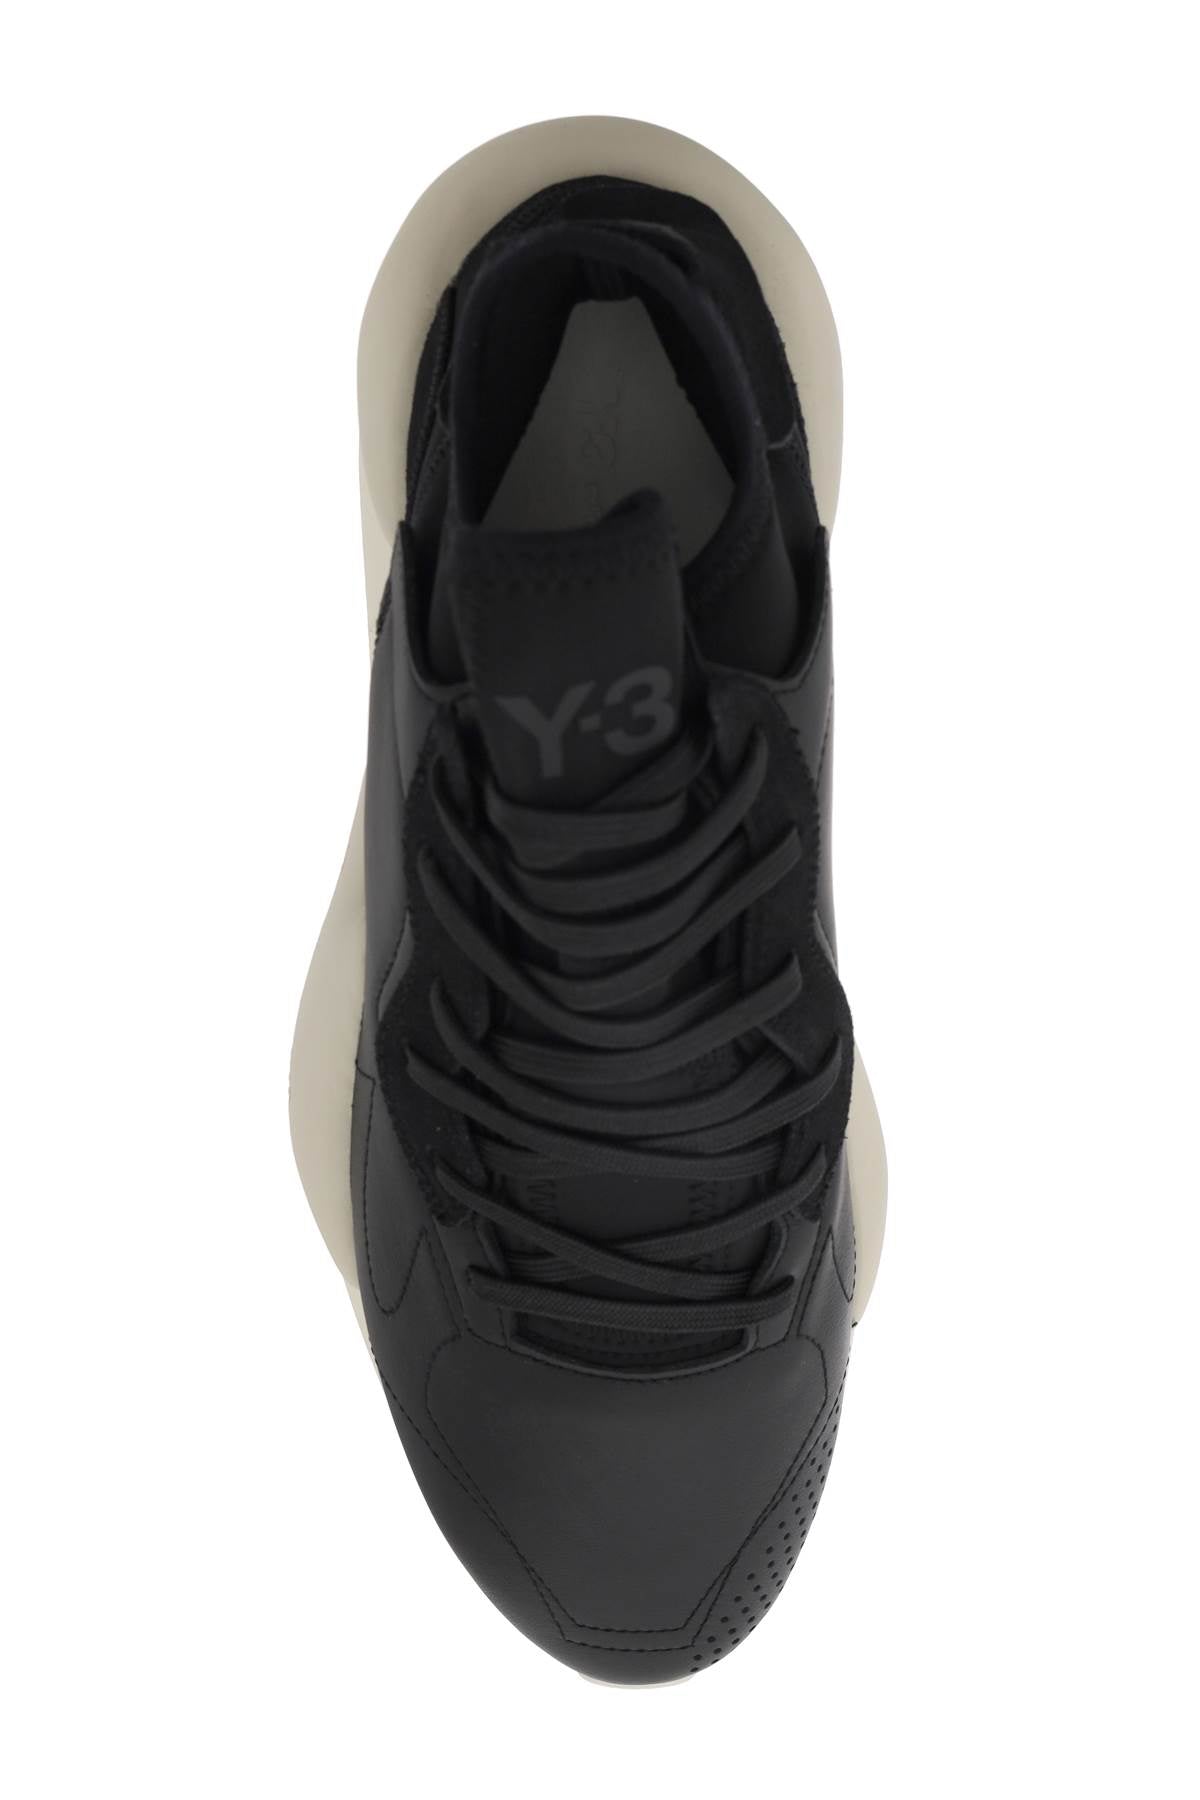 Y-3 y-3 kaiwa sneakers-1